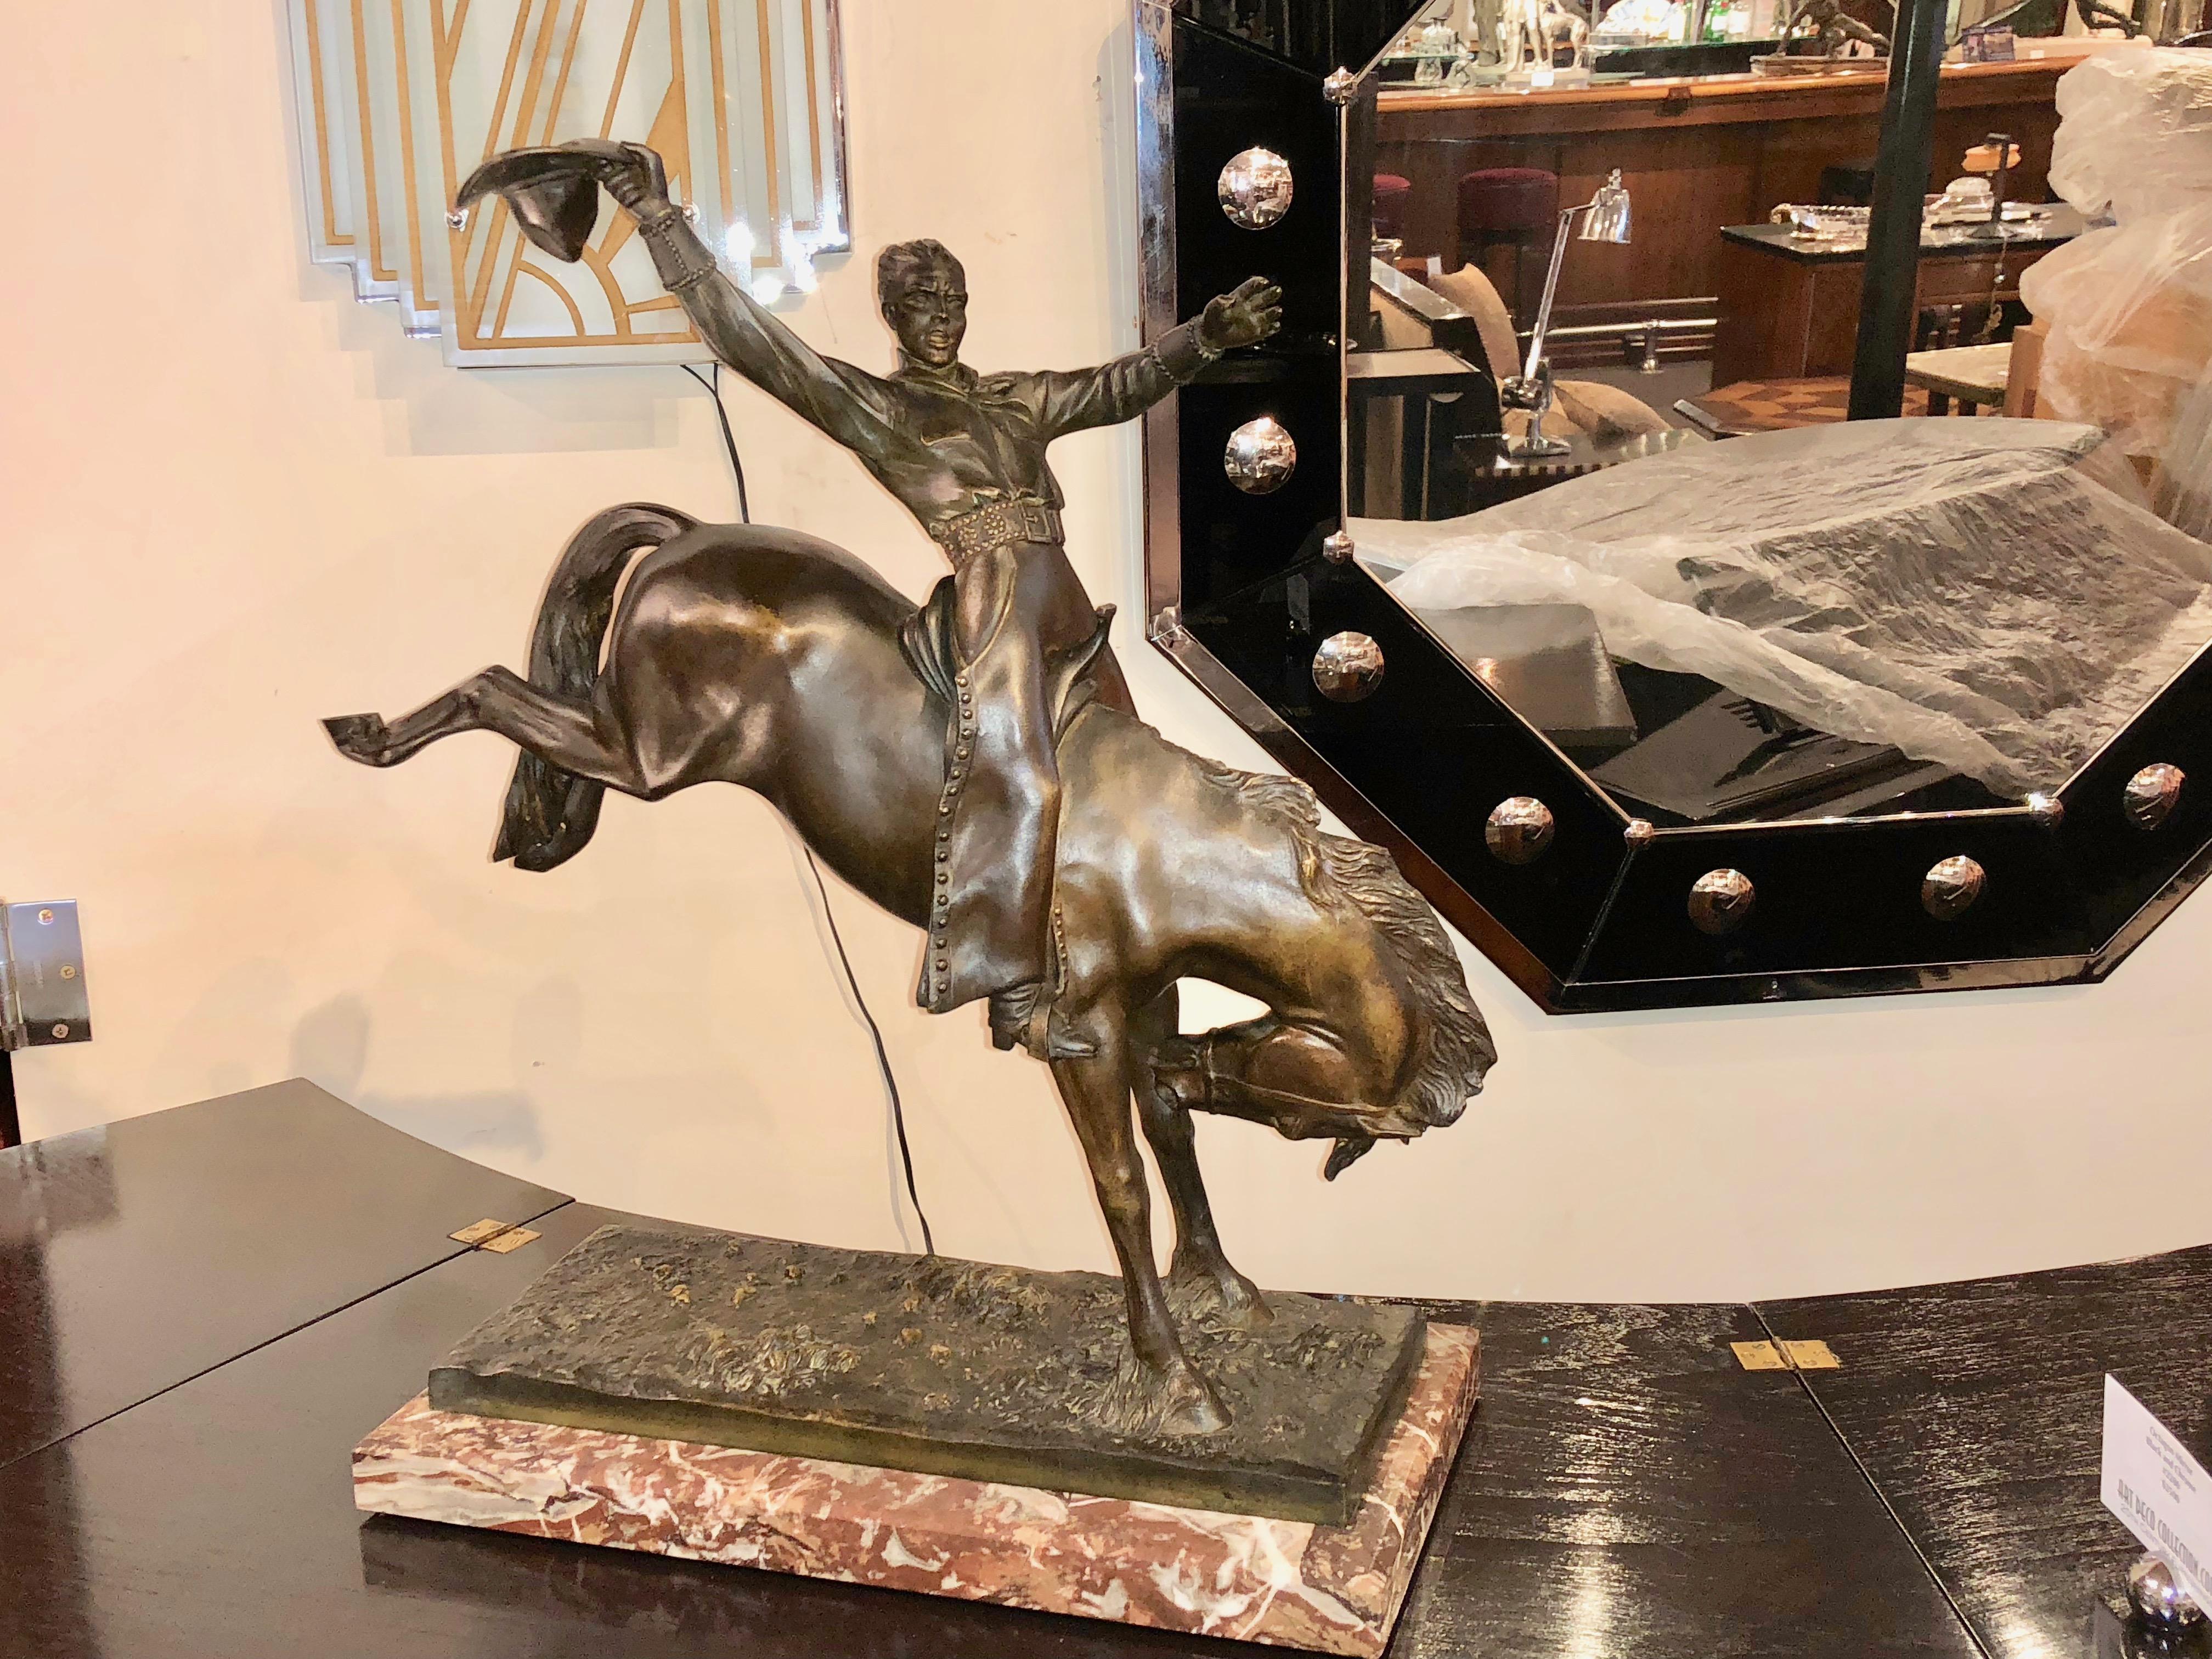 Rare grande sculpture en bronze de Maurice Guiraud Rivière & Etling Paris représentant la figure d'un cow-boy au rodéo sur un bucking bronco.
Superbe fonderie d'édition Etling de haute qualité avec ciselage détaillé. Patine brune authentique et